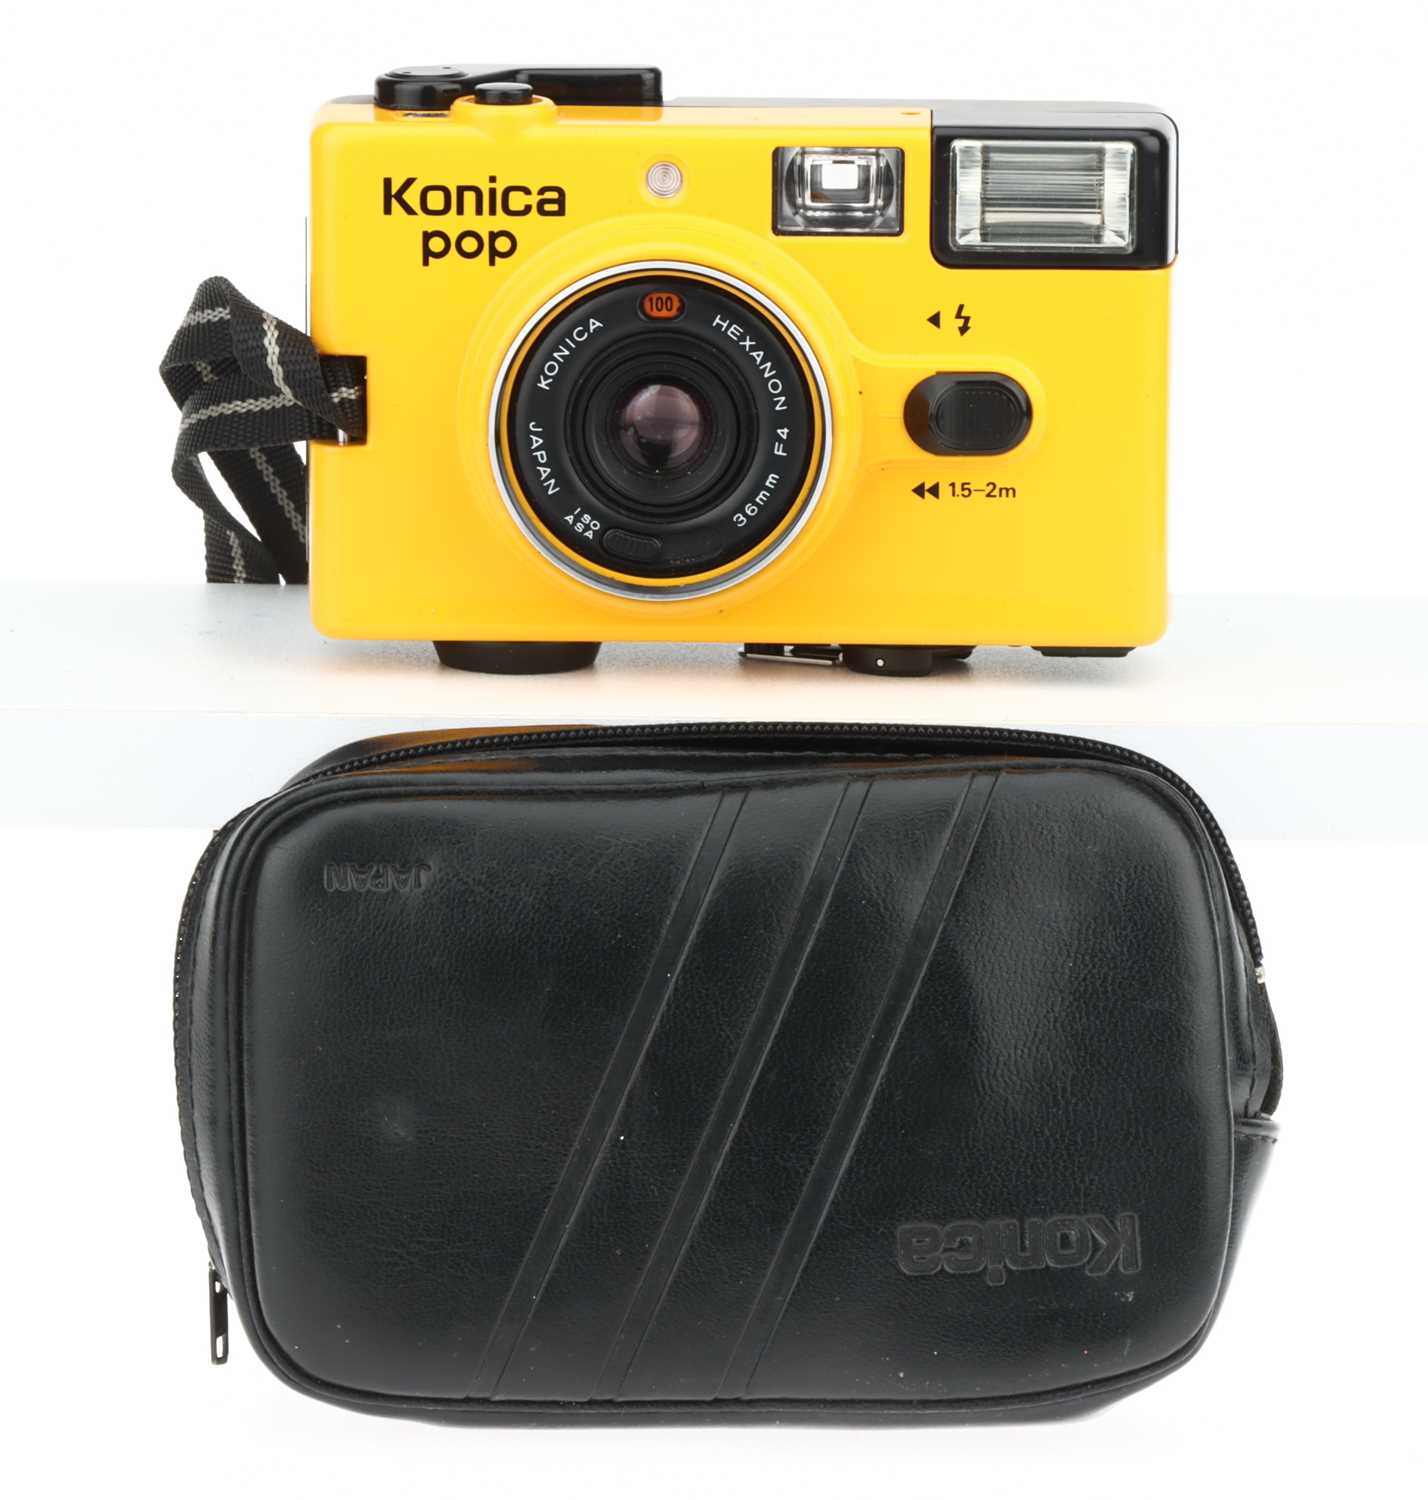 Lot 320 - A Konica PoP Compact Camera